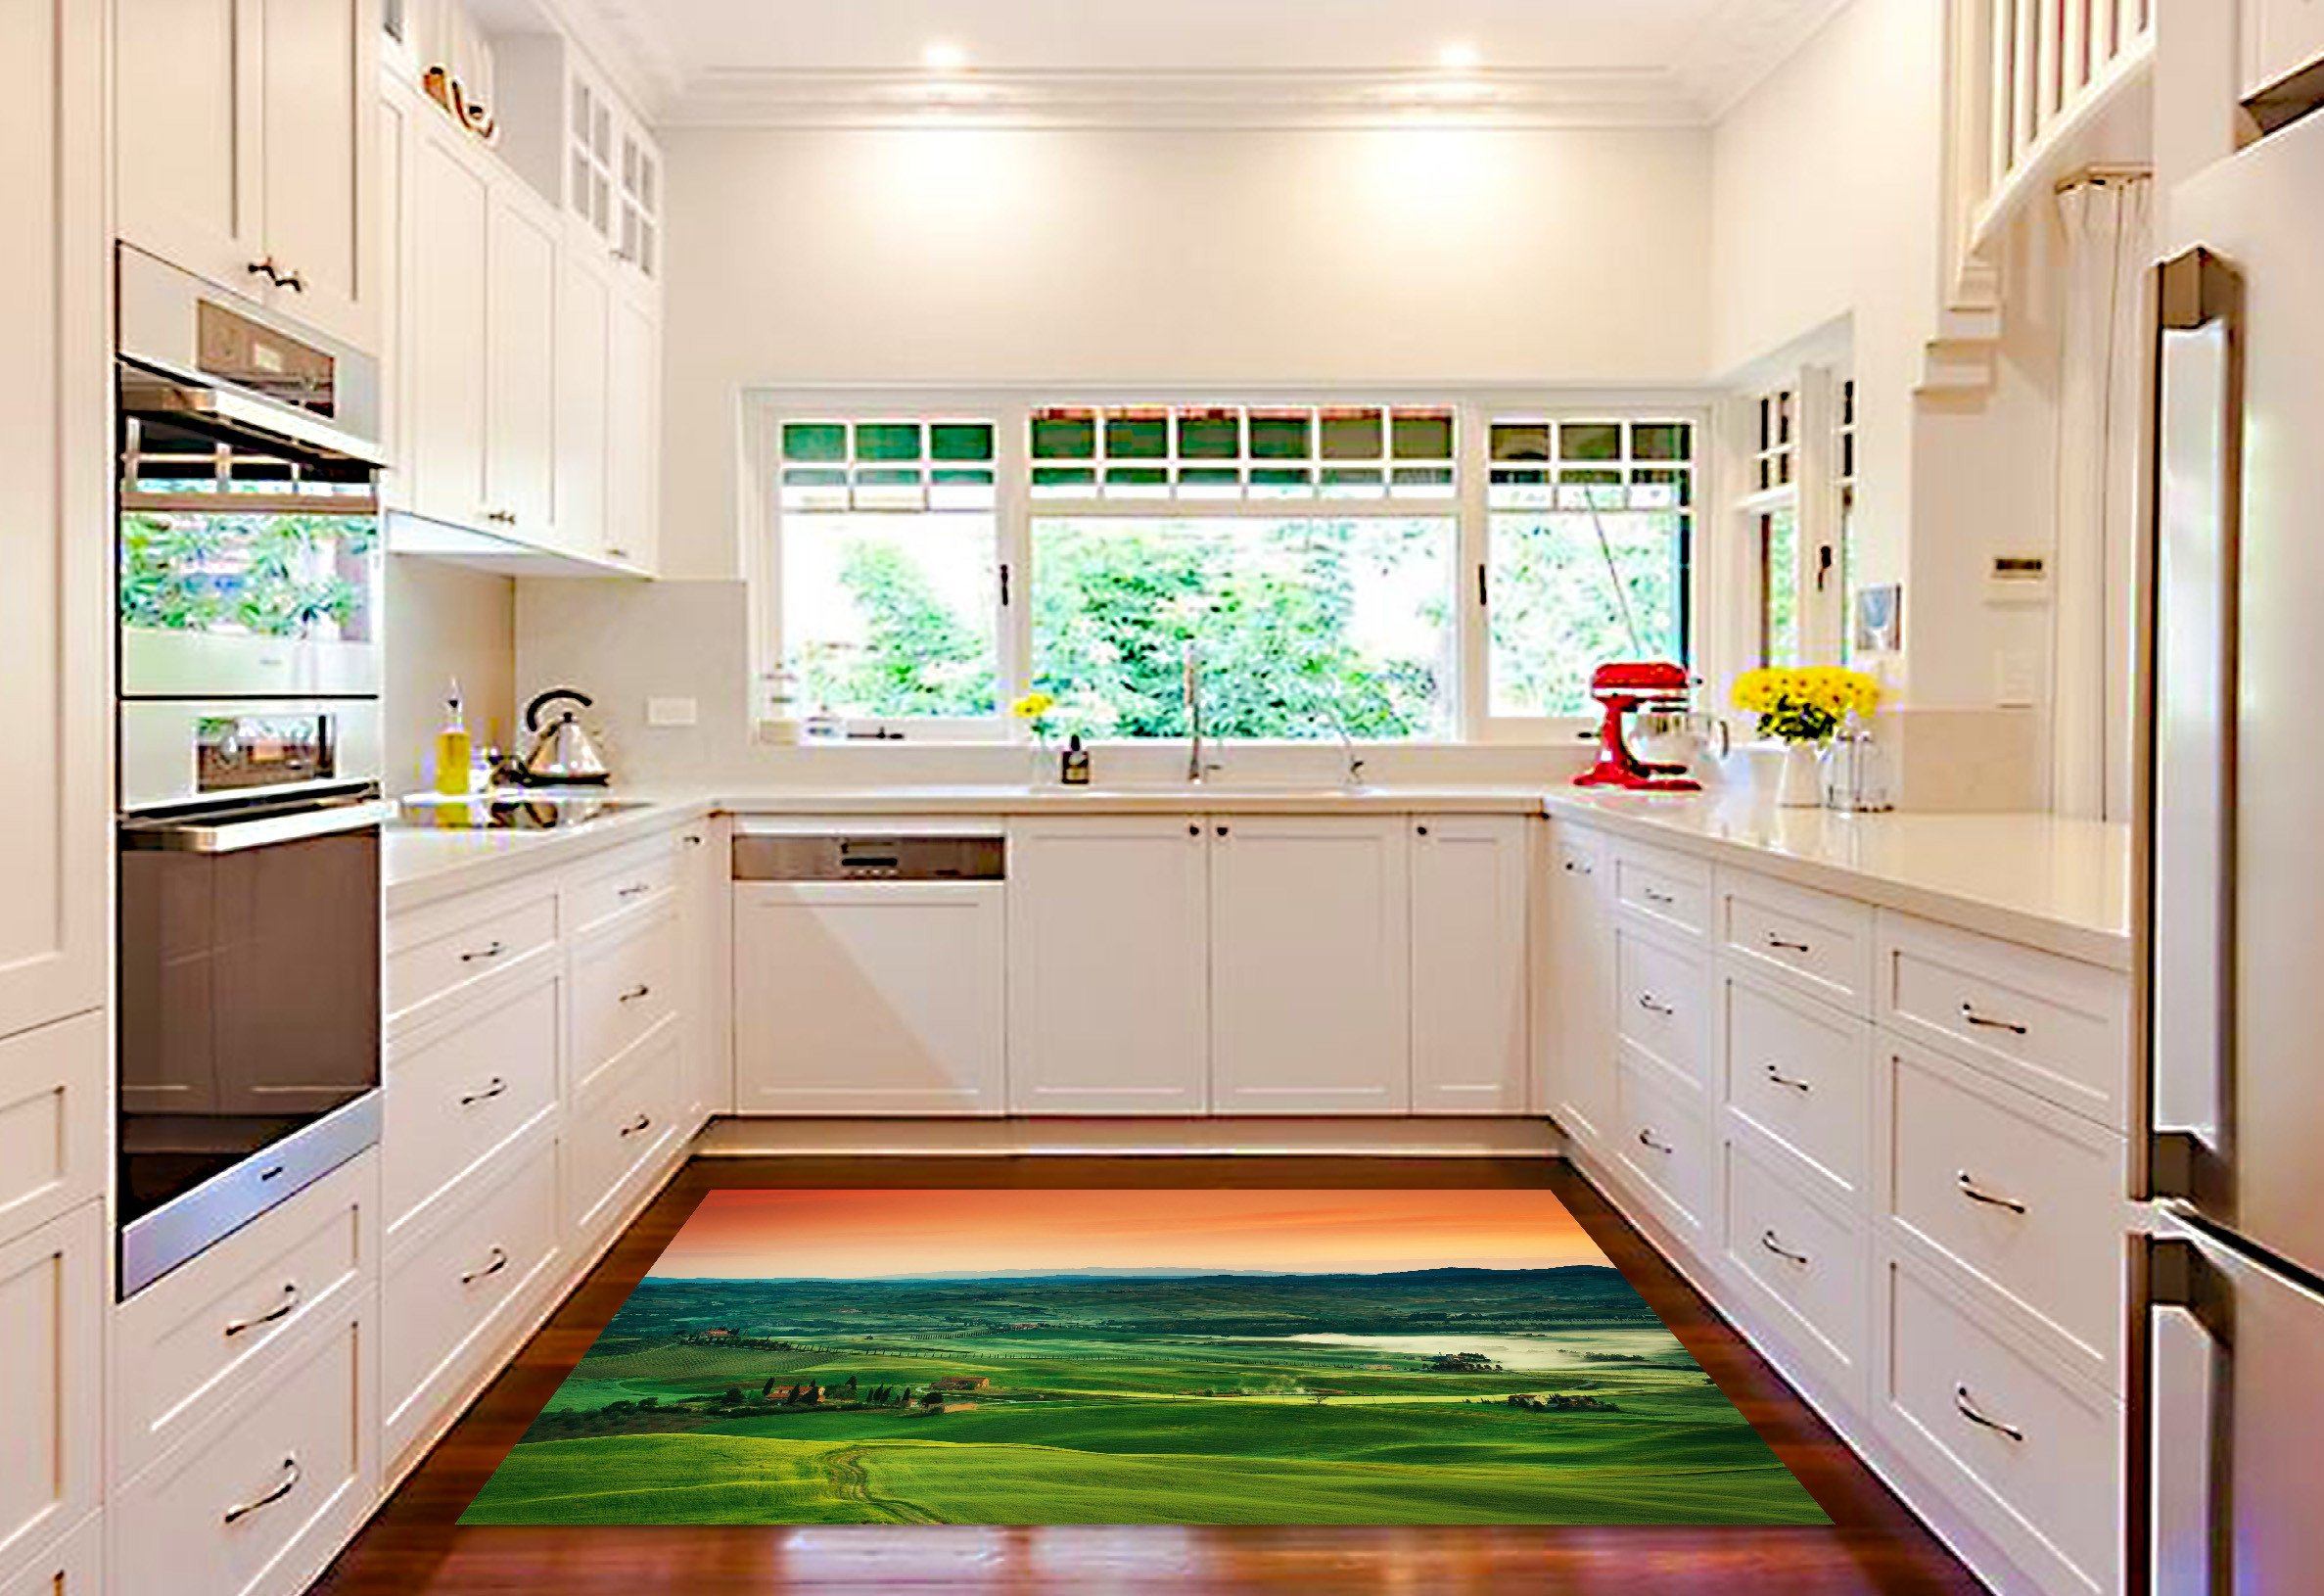 3D Green Hilly Area 501 Kitchen Mat Floor Mural Wallpaper AJ Wallpaper 